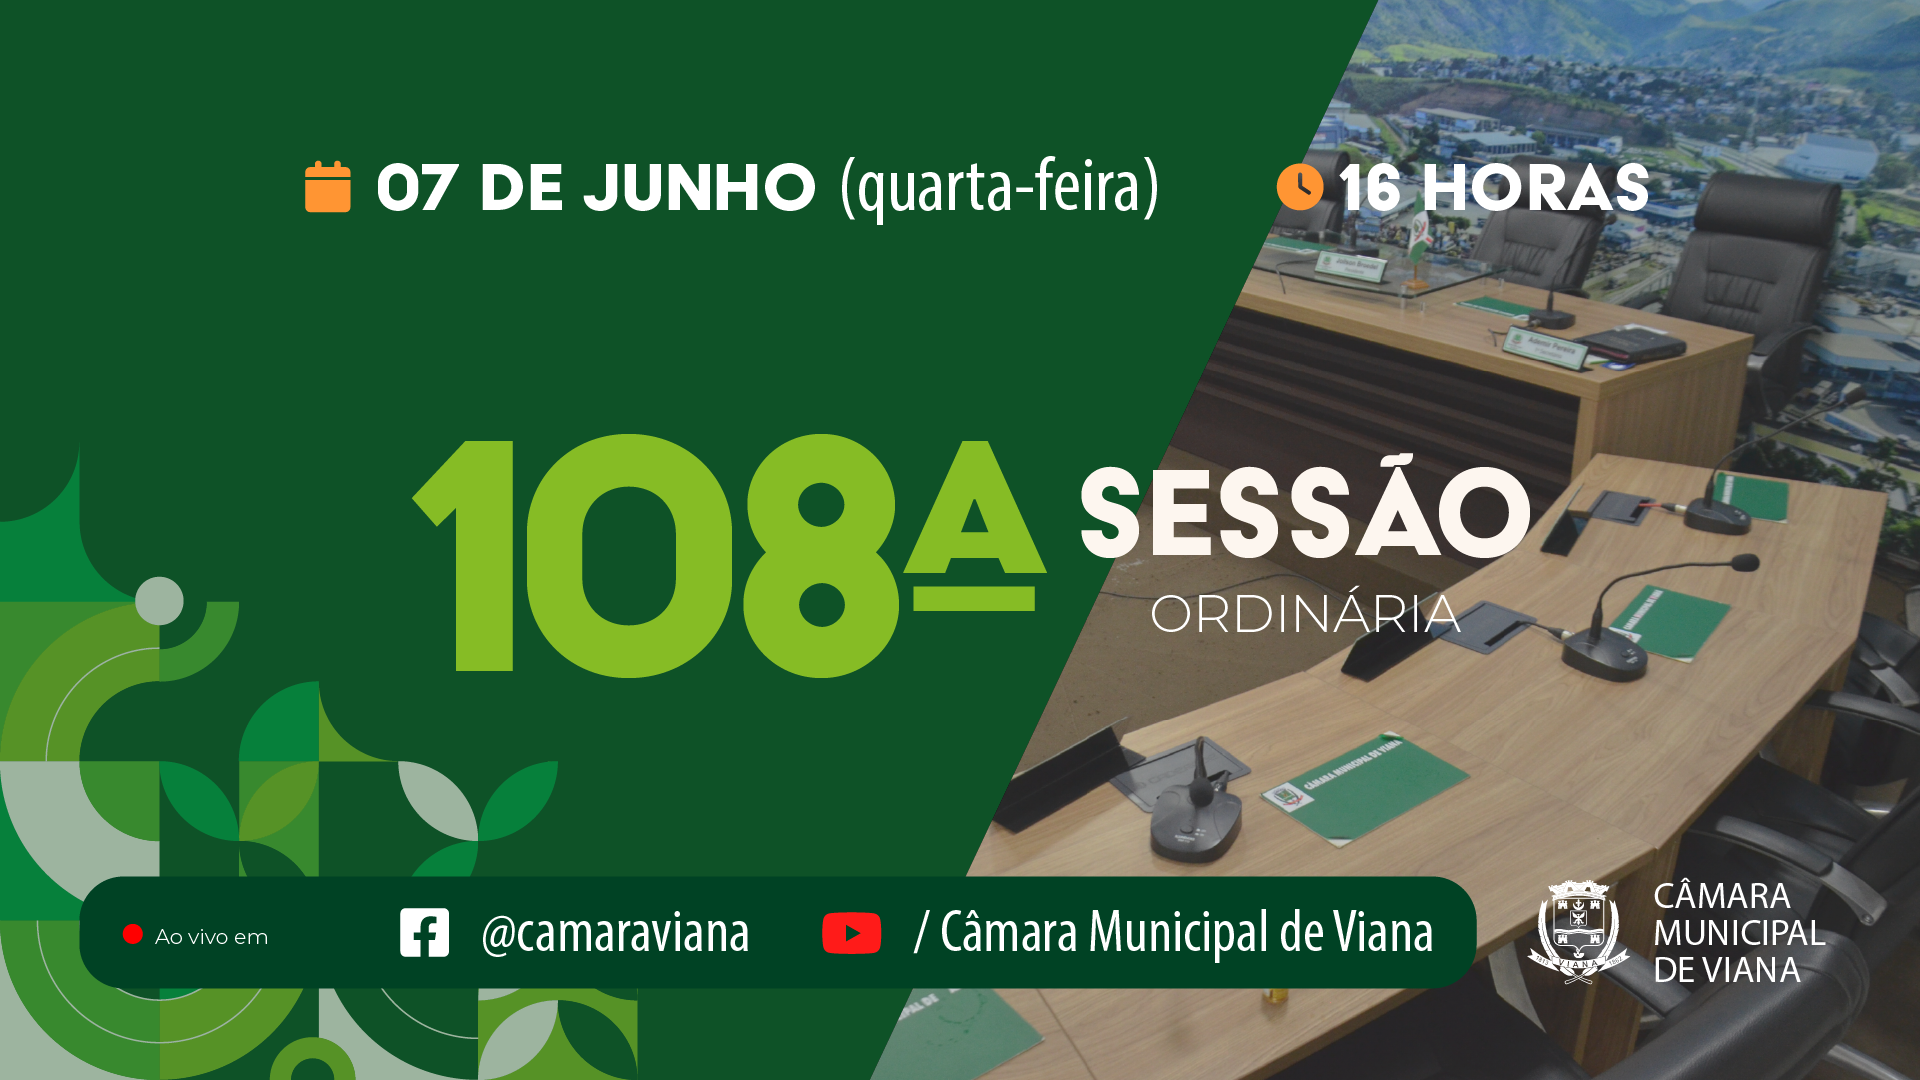 PAUTA DA CENTÉSIMA OITAVA (108ª) SESSÃO ORDINÁRIA